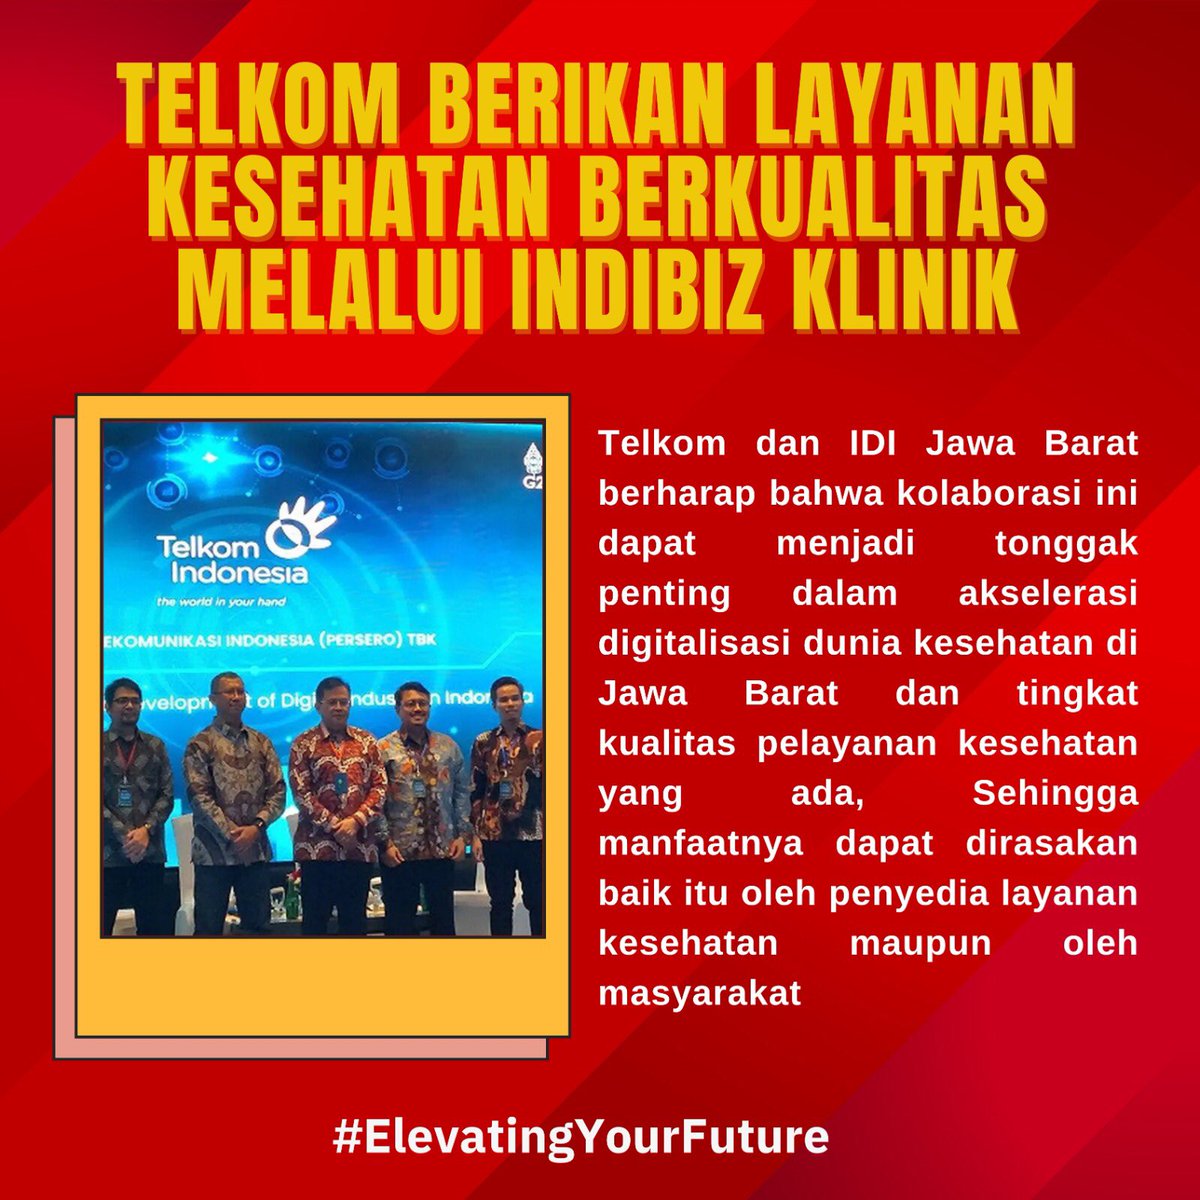 Meningkatnya Telkom berikan layanan kesehatan berkualitas melalui Inbiz klinik

#ElevatingYourFuture #KinerjaPositifBUMN
@KemenBUMN @Telkomindonesia @erickthohir